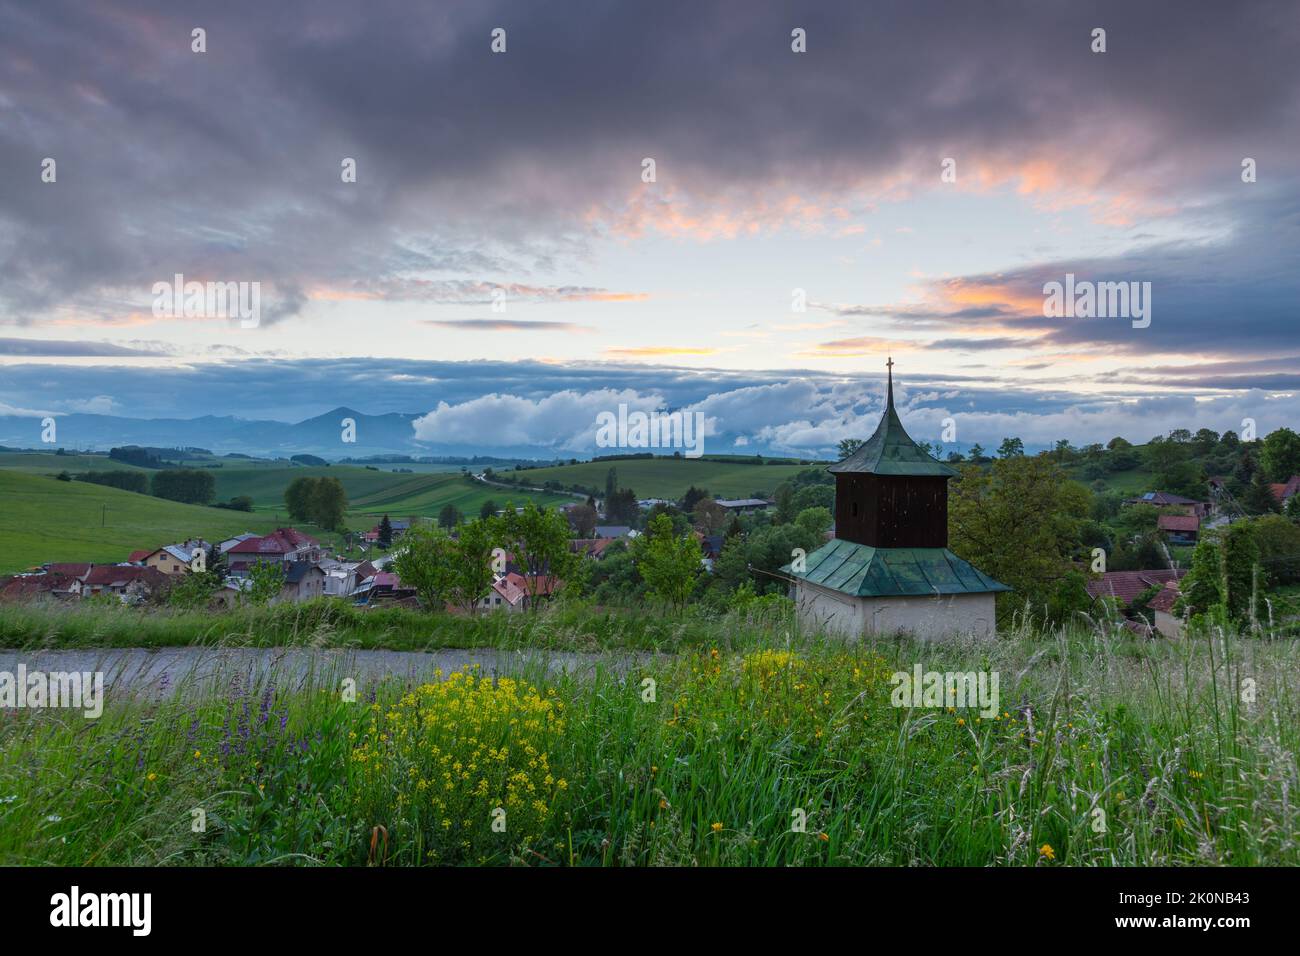 Campanile storico nel villaggio di Turcianske Jaseno, Slovacchia. Foto Stock